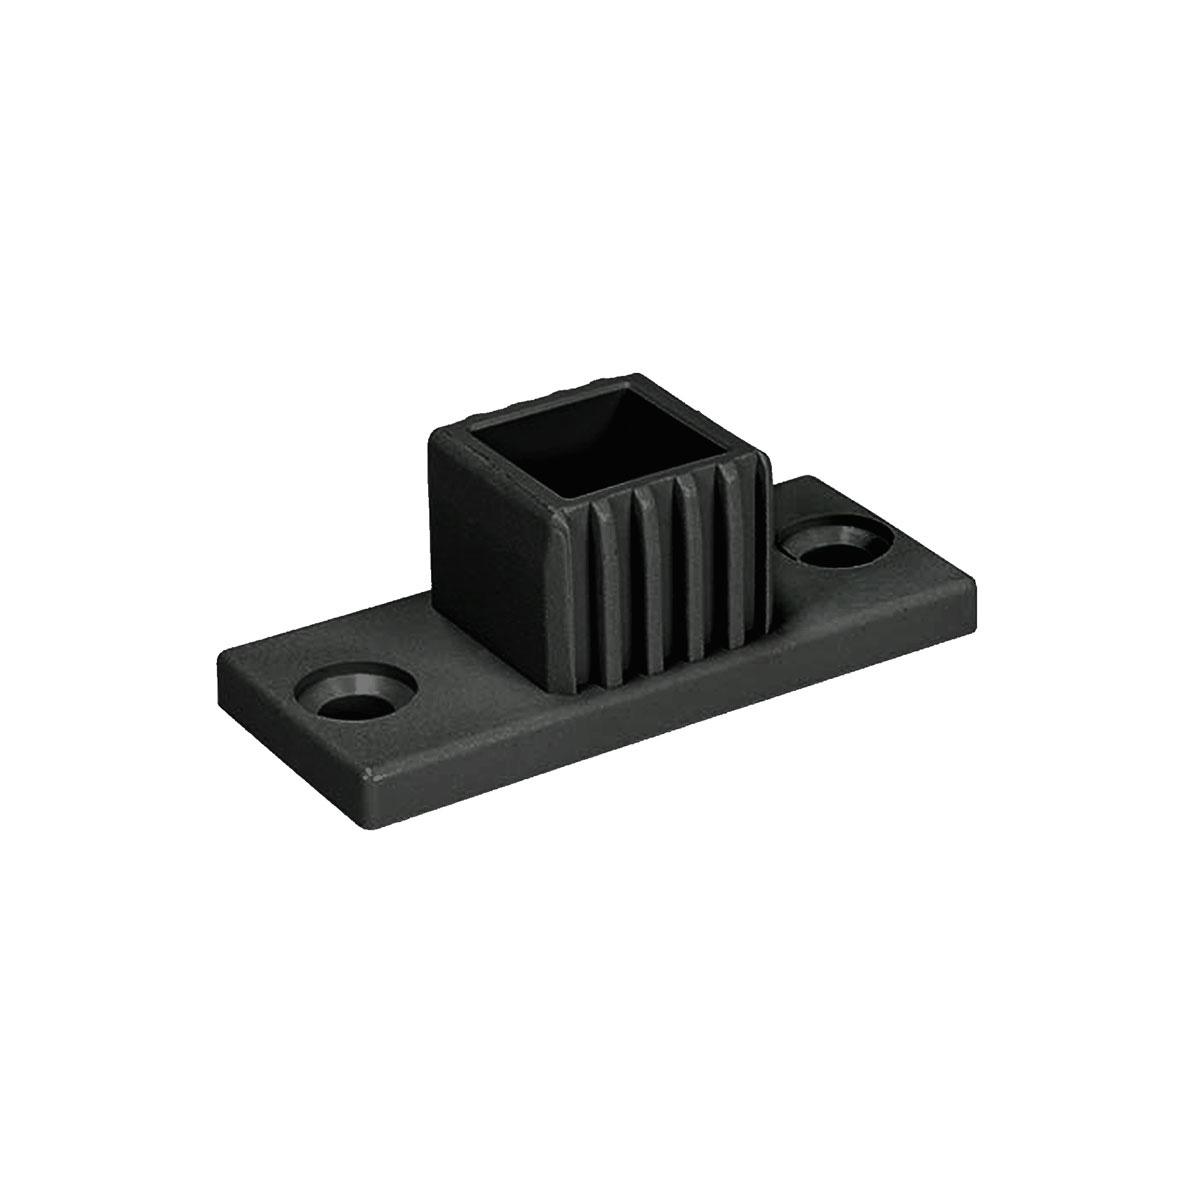 Flansch mit Zapfen - Sonderverbinder für Vierkantrohr 25 x 25 mm - Kunststoff schwarz online kaufen - 1D1V25K-FLANSCH